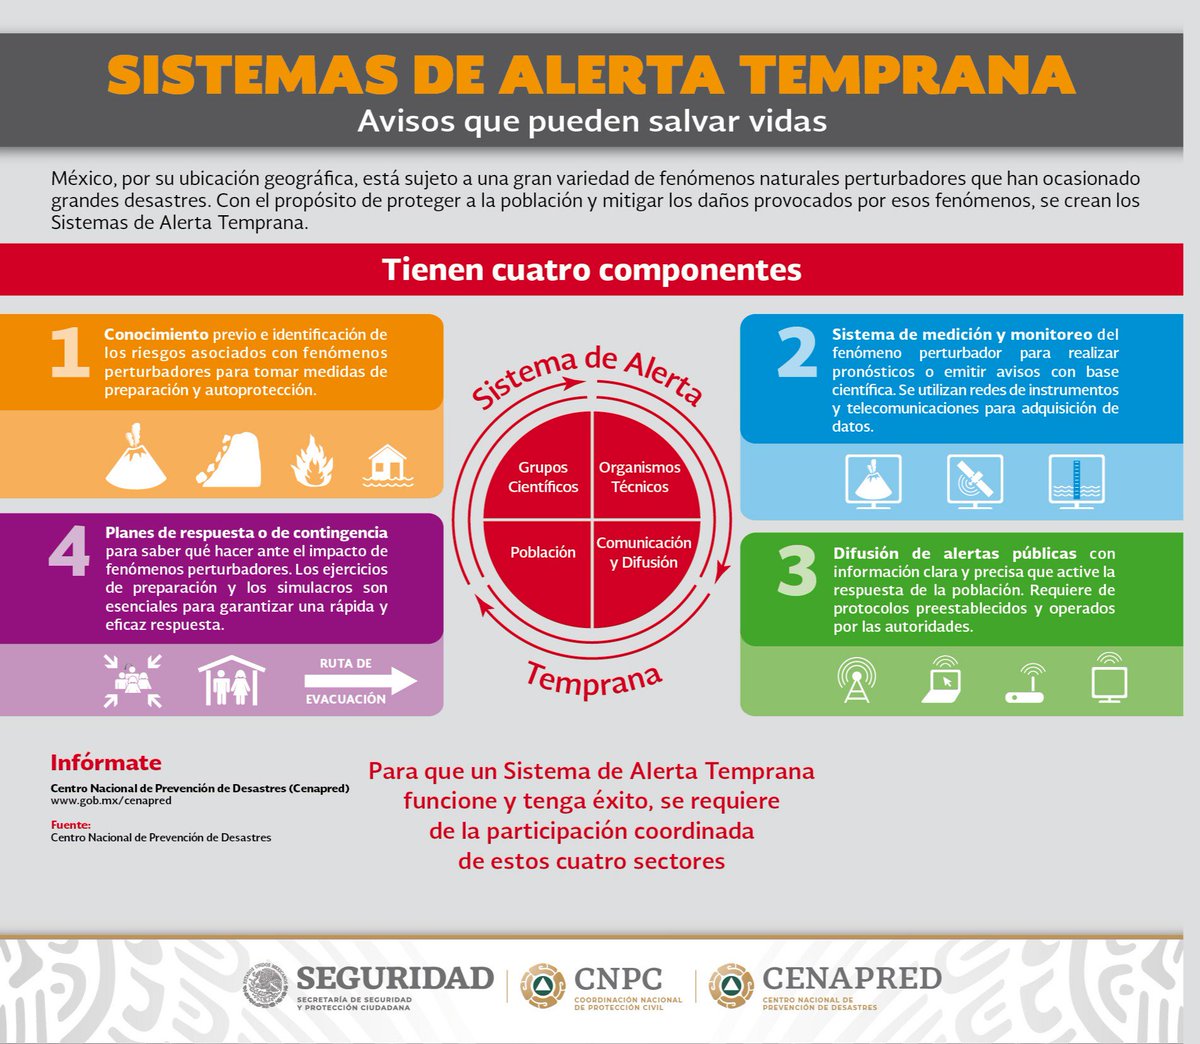 El Sistema de Alerta Temprana cuenta con cuatro componentes. Conoce los